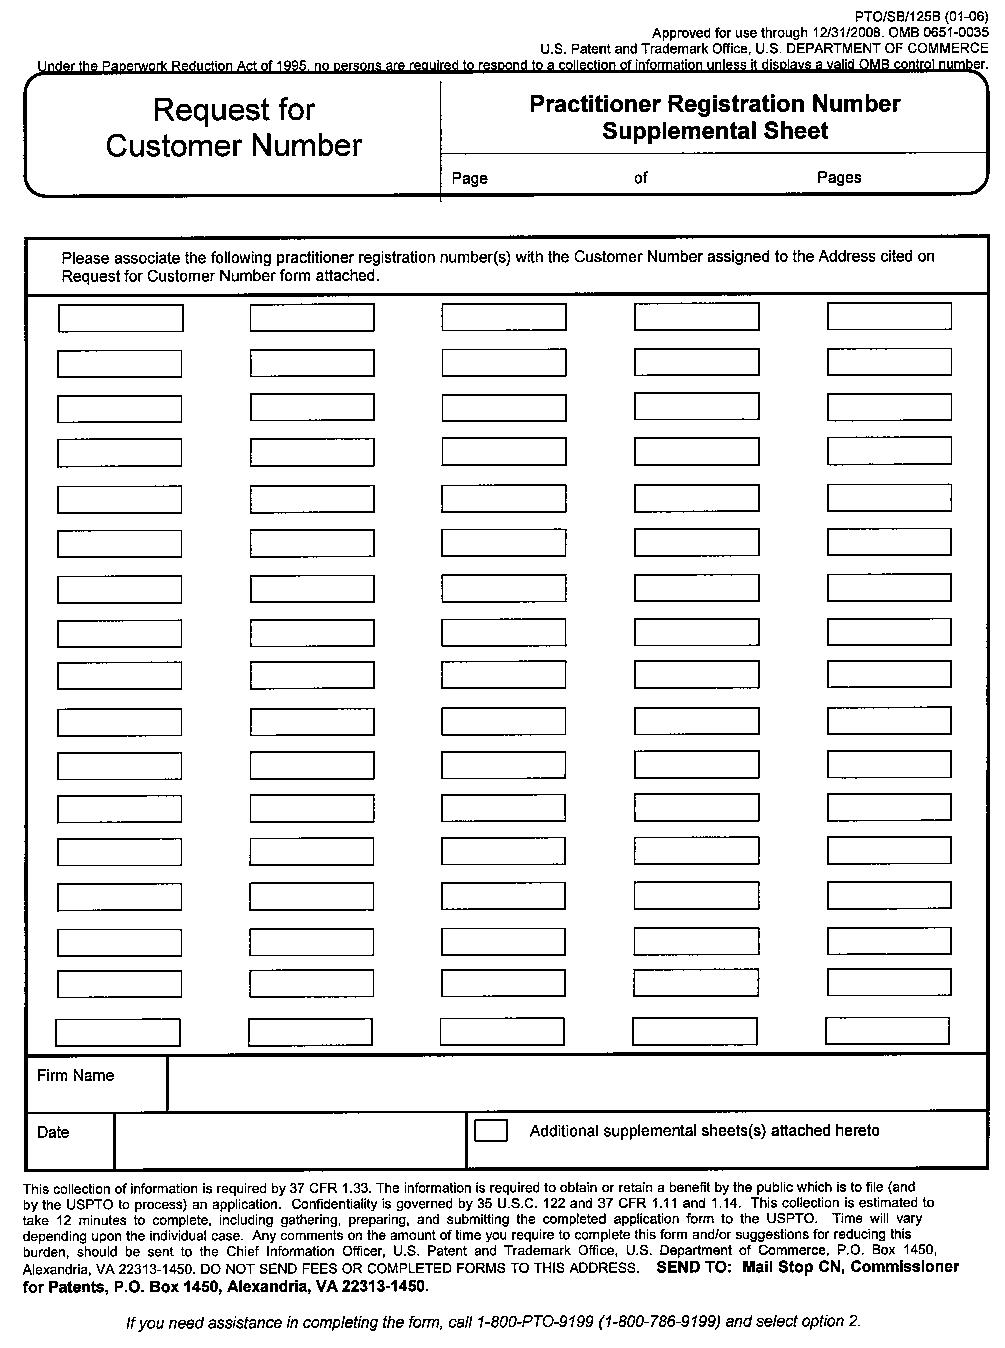 form pto/sb/25b request for customer number practitioner registration number supplemental sheet